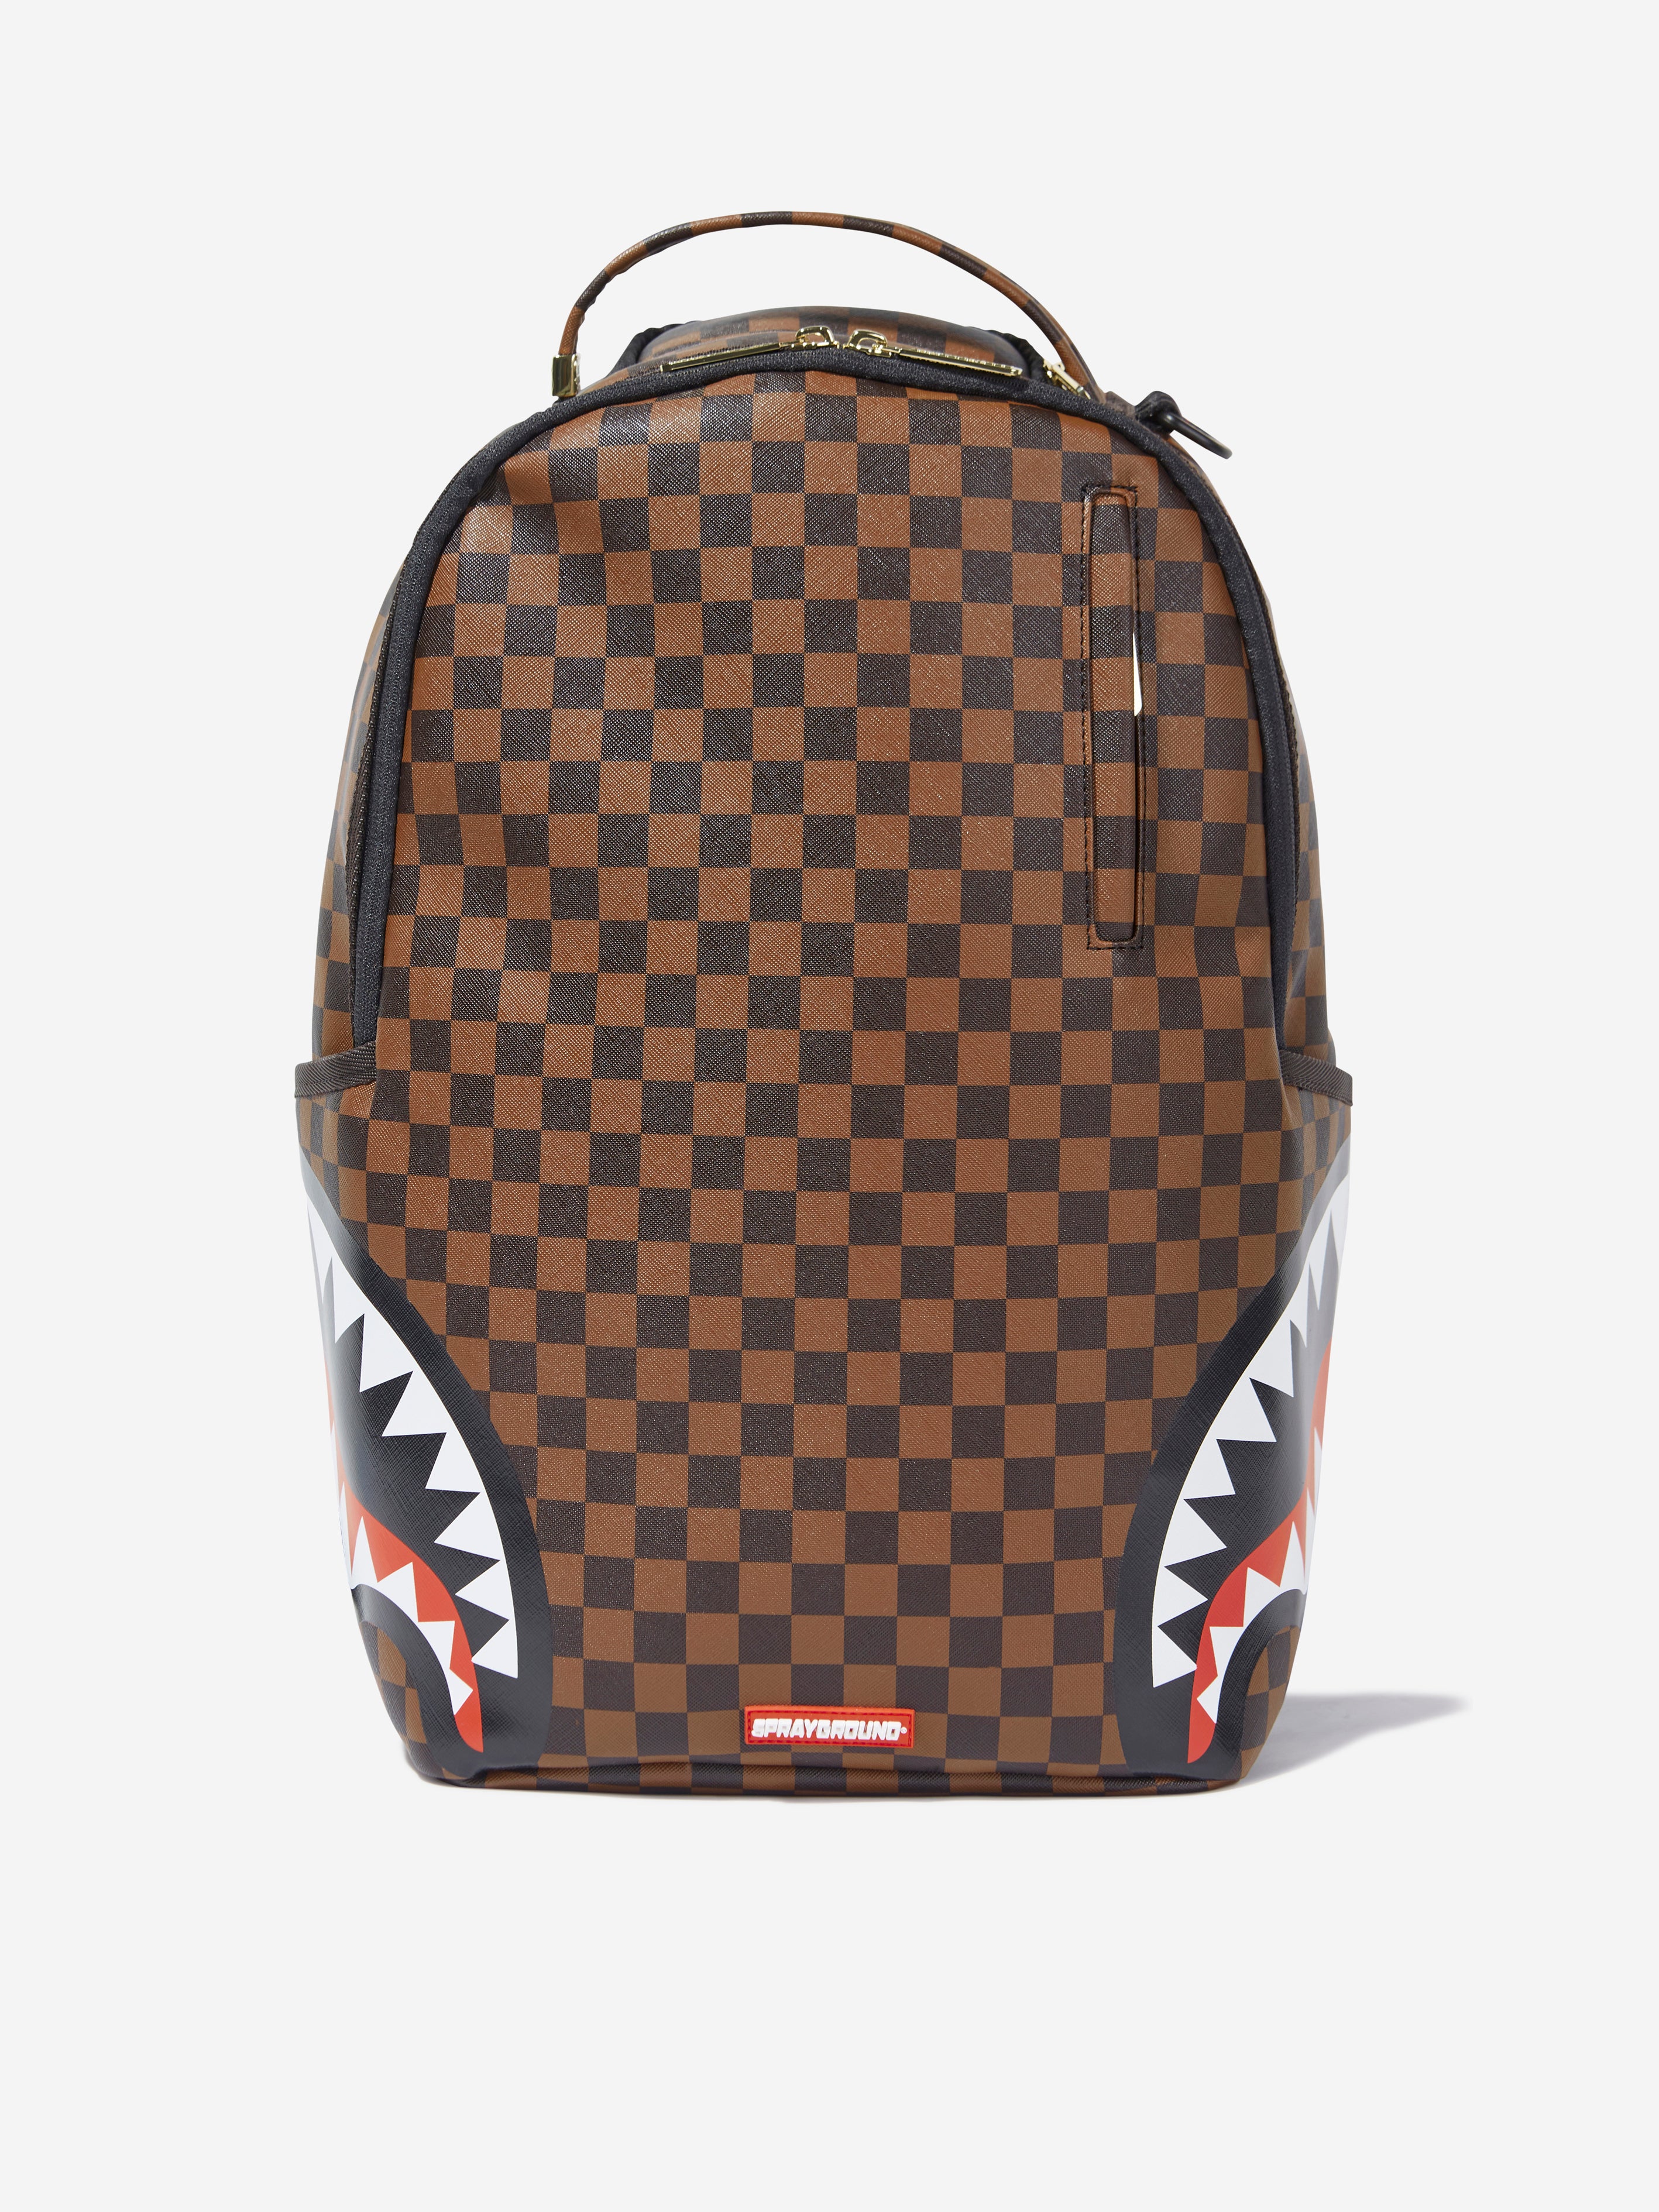 SPRAYGROUND Checkerboard Shark Backpack - Brown